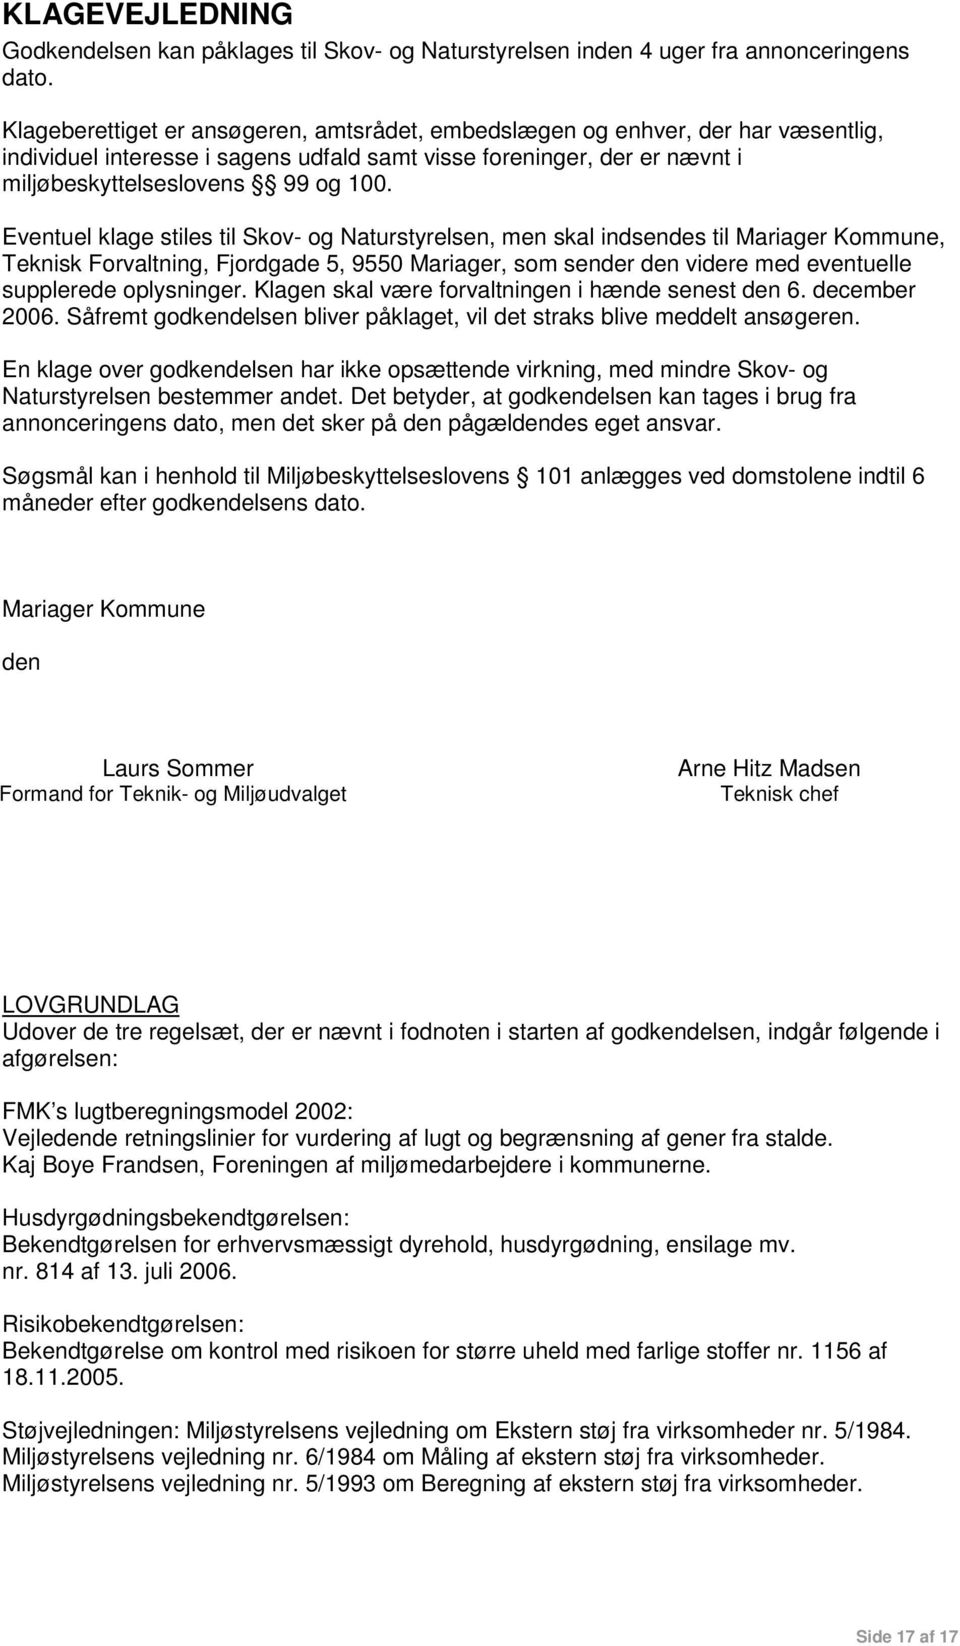 Eventuel klage stiles til Skov- og Naturstyrelsen, men skal indsendes til Mariager Kommune, Teknisk Forvaltning, Fjordgade 5, 9550 Mariager, som sender den videre med eventuelle supplerede